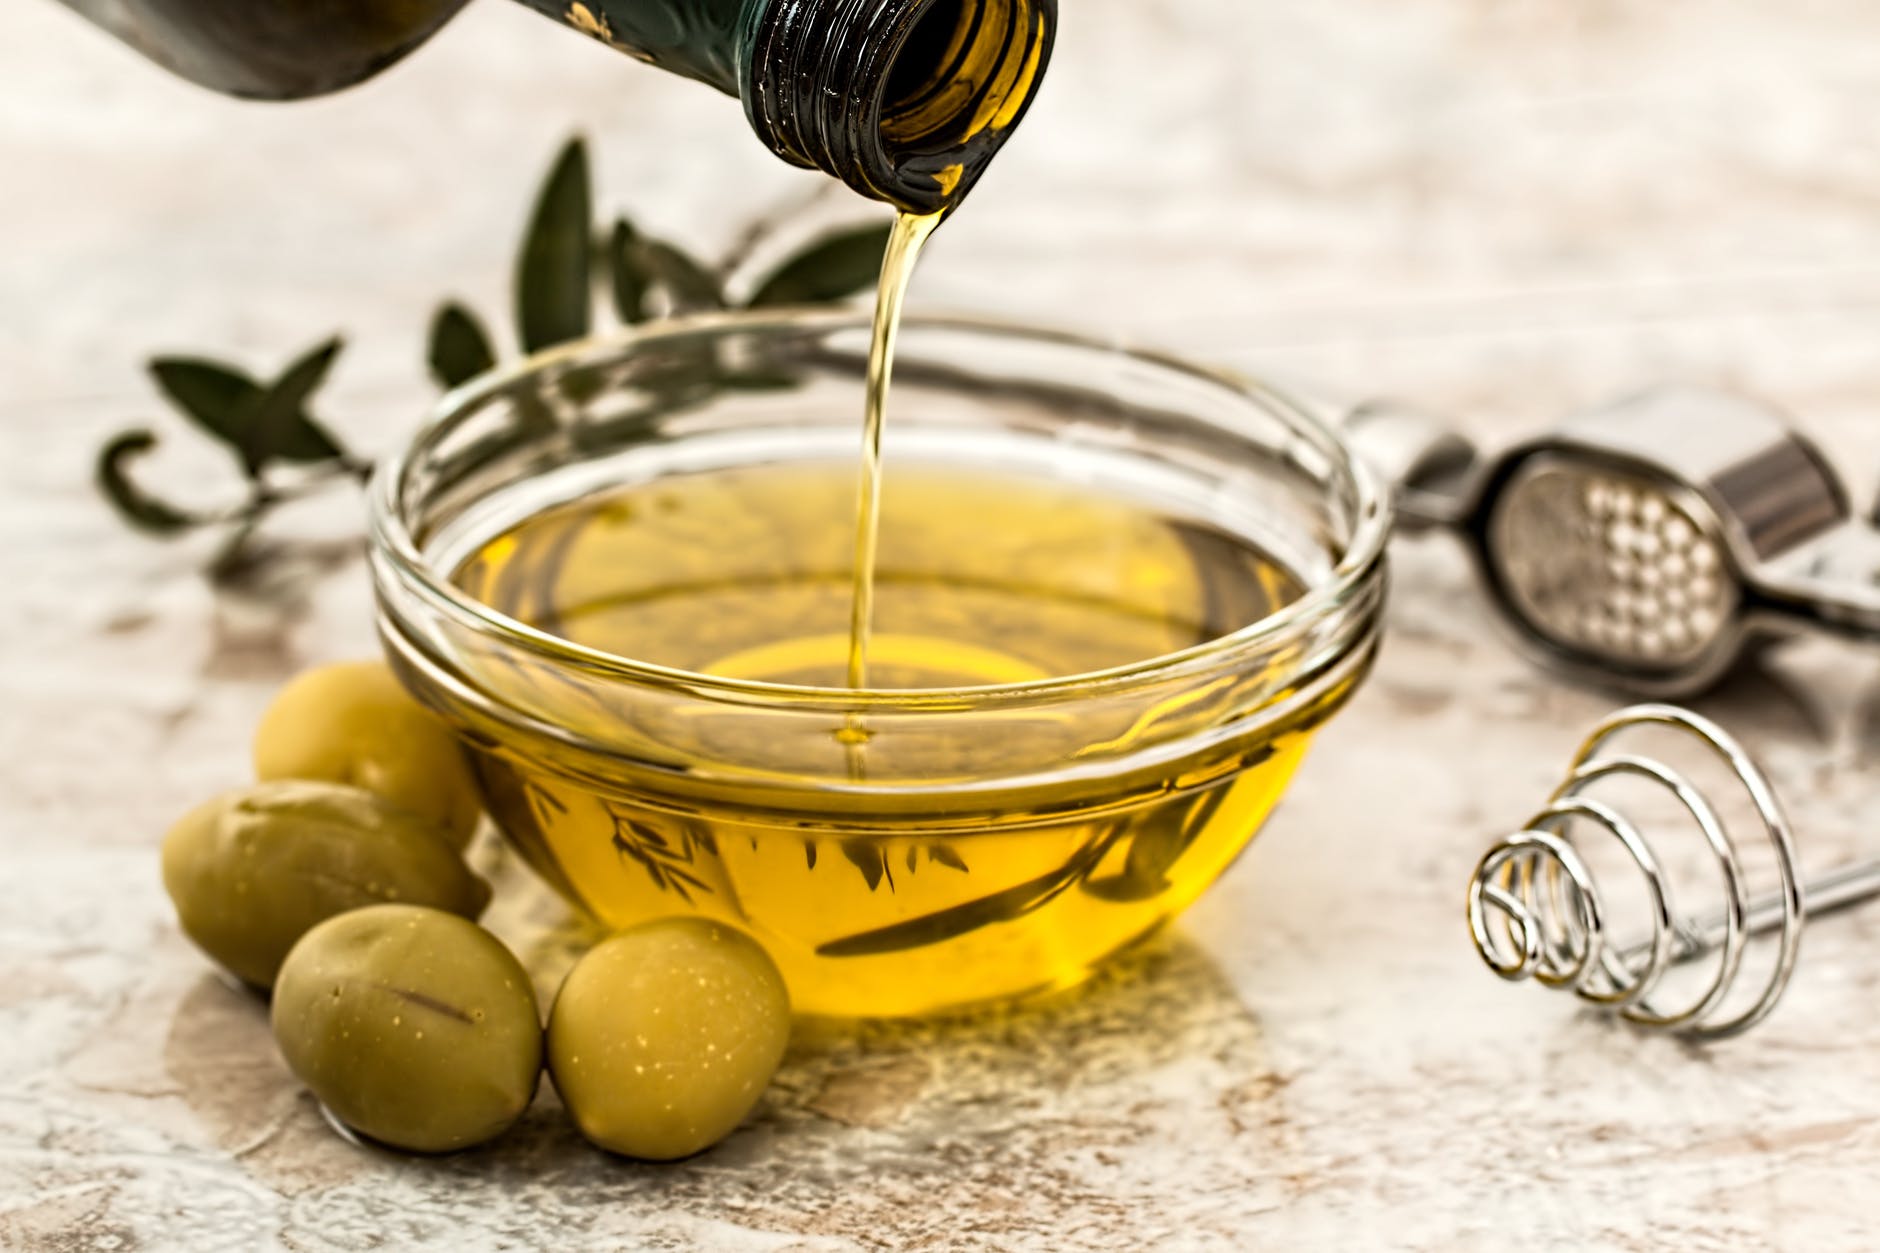 Dầu oliu là sản phẩm tự nhiên lành tính có khả năng dưỡng trắng da khi được kết hợp với mặt nạ đậu đỏ